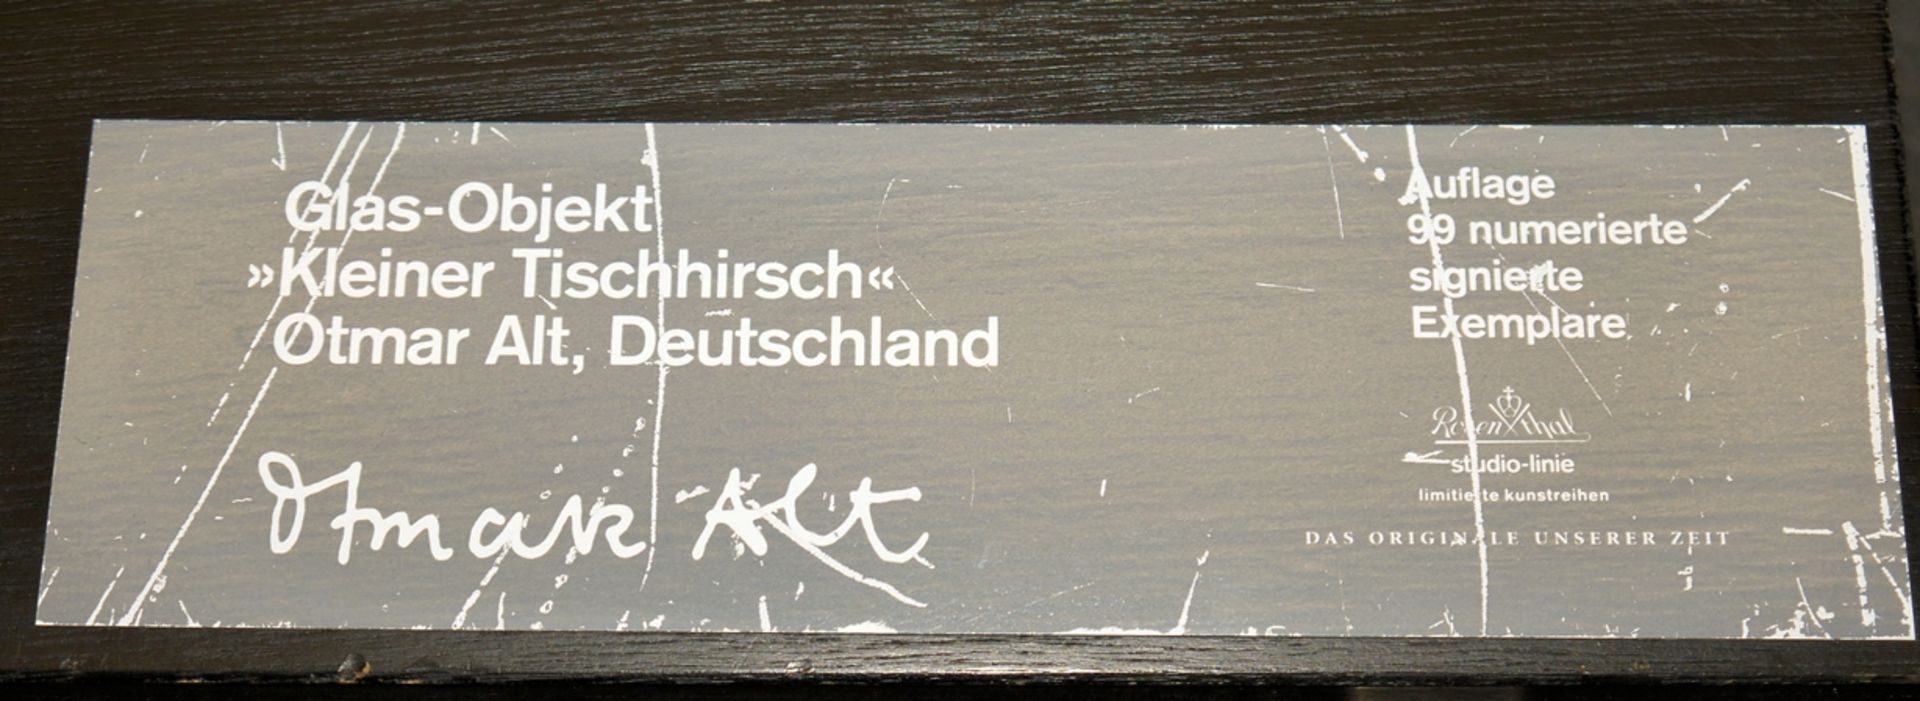 Otmar Alt, "Kleiner Tischhirsch", Glas-Objekt Rosenthal - Bild 2 aus 2